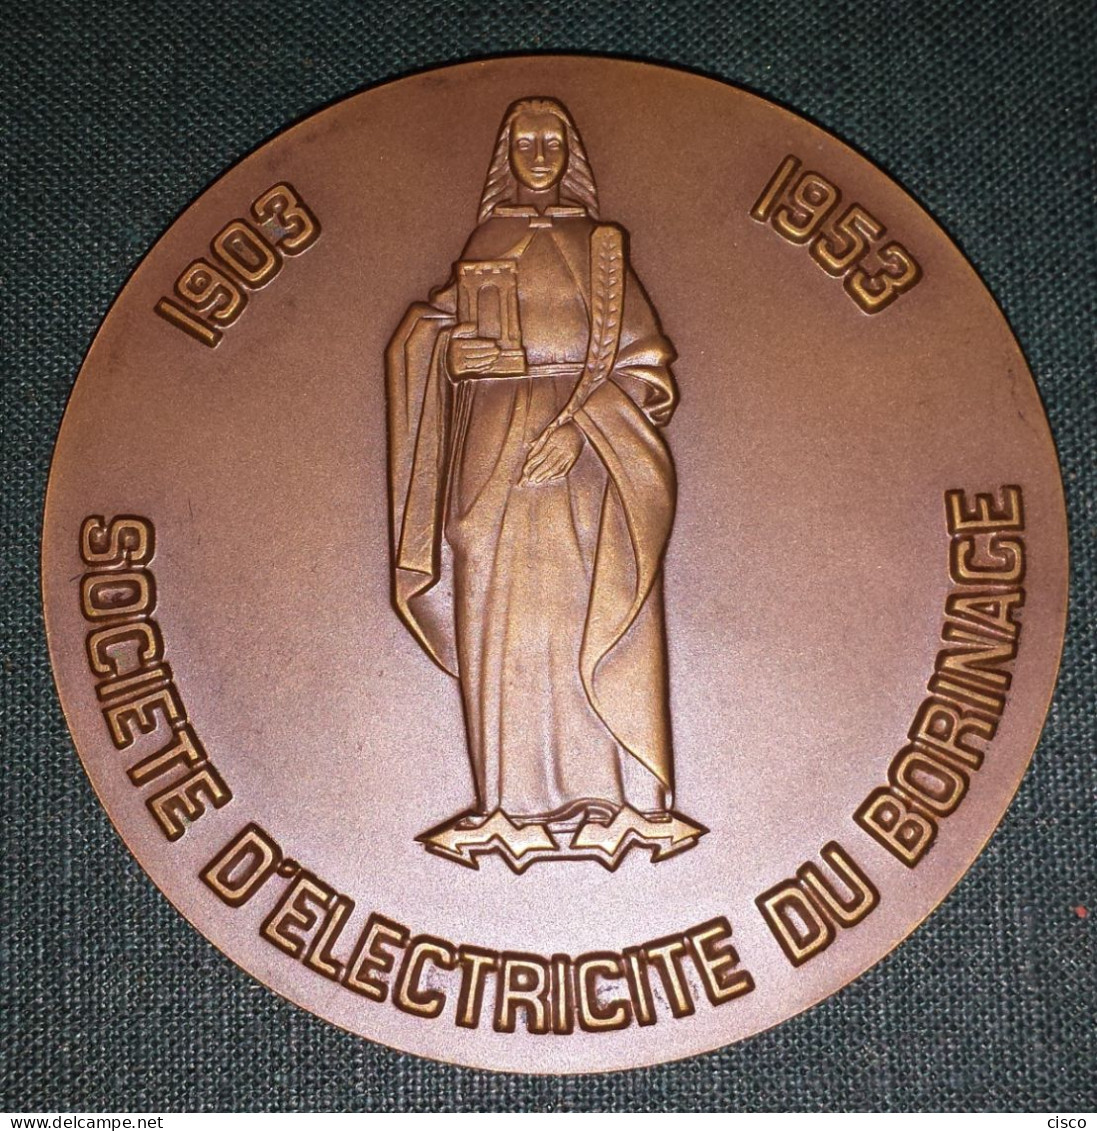 BELGIQUE Médaille DUBIE Beffroi De Mons - Electricité Du Borinage 1903 - 1953 - Unternehmen